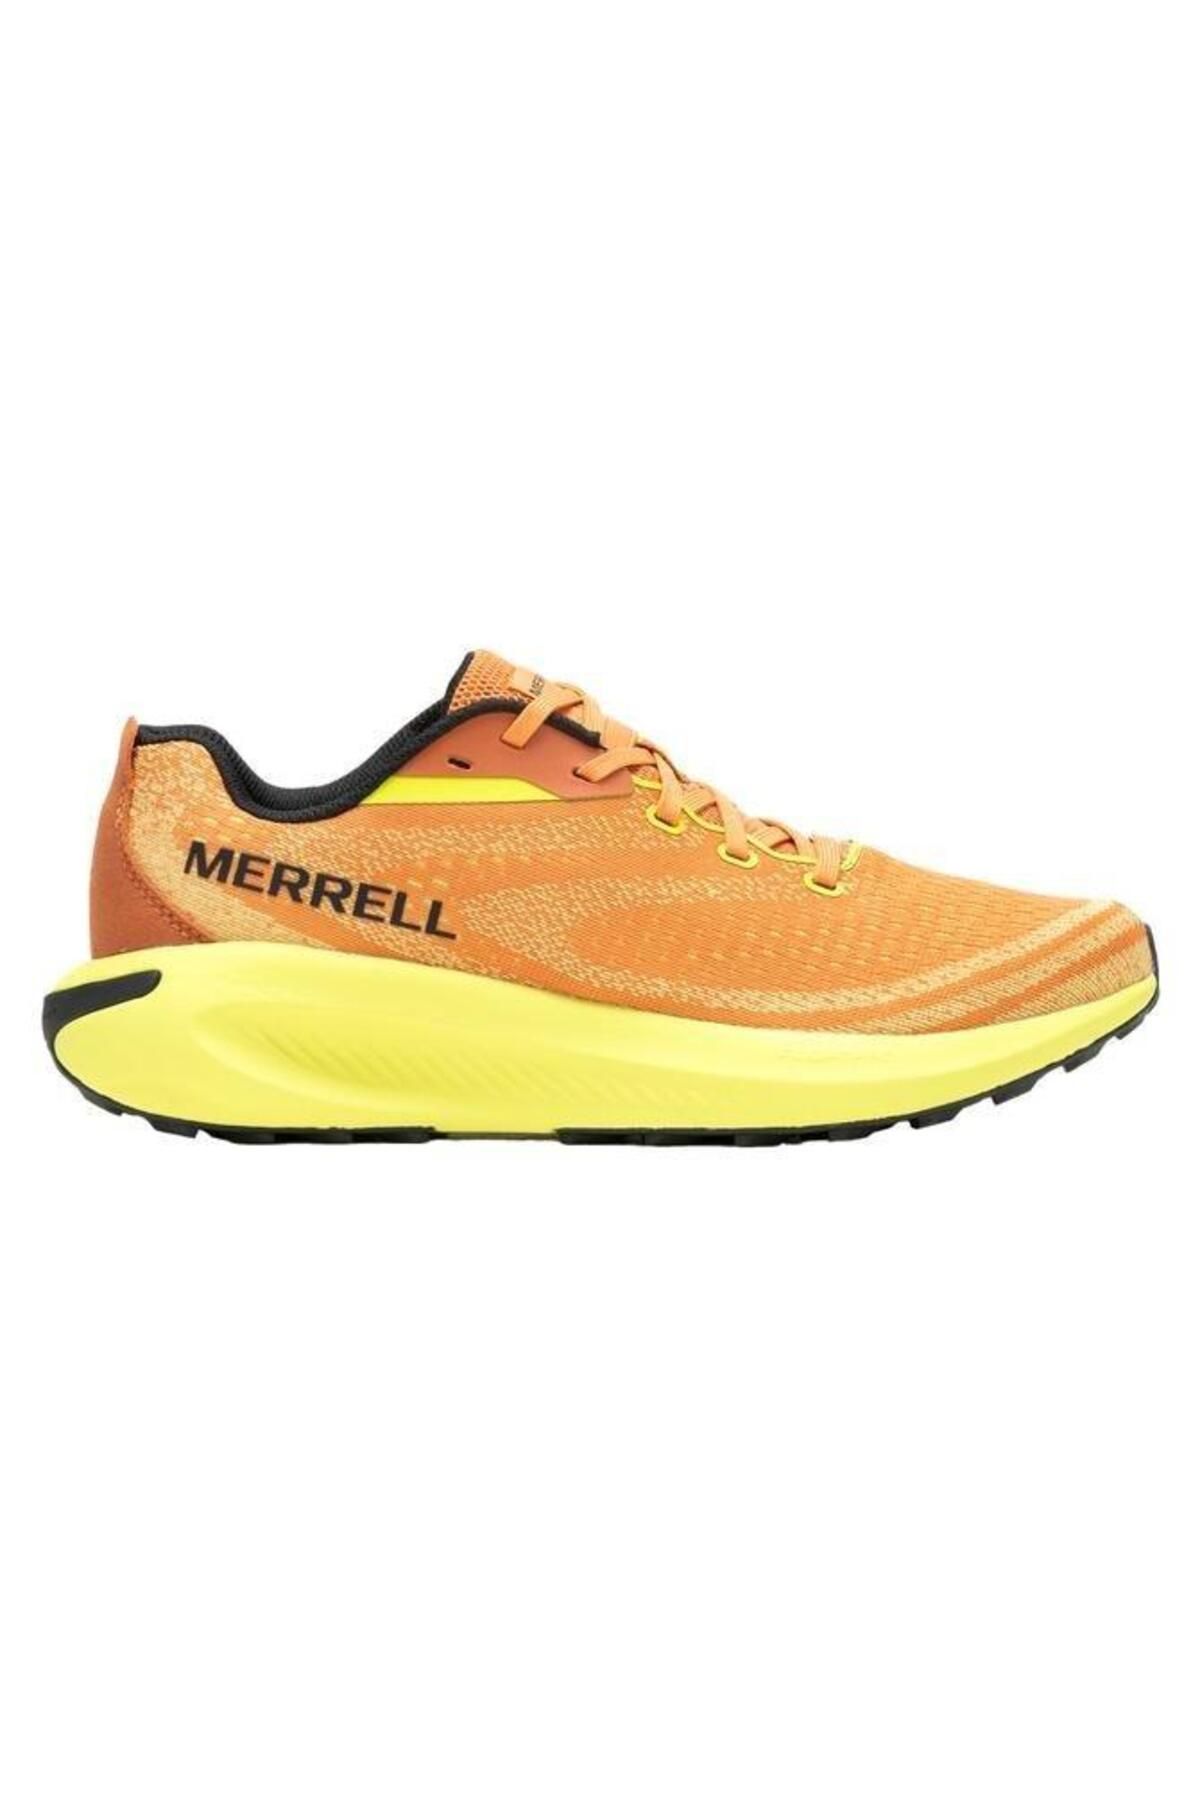 Merrell Morphlite Erkek Koşu Ayakkabı